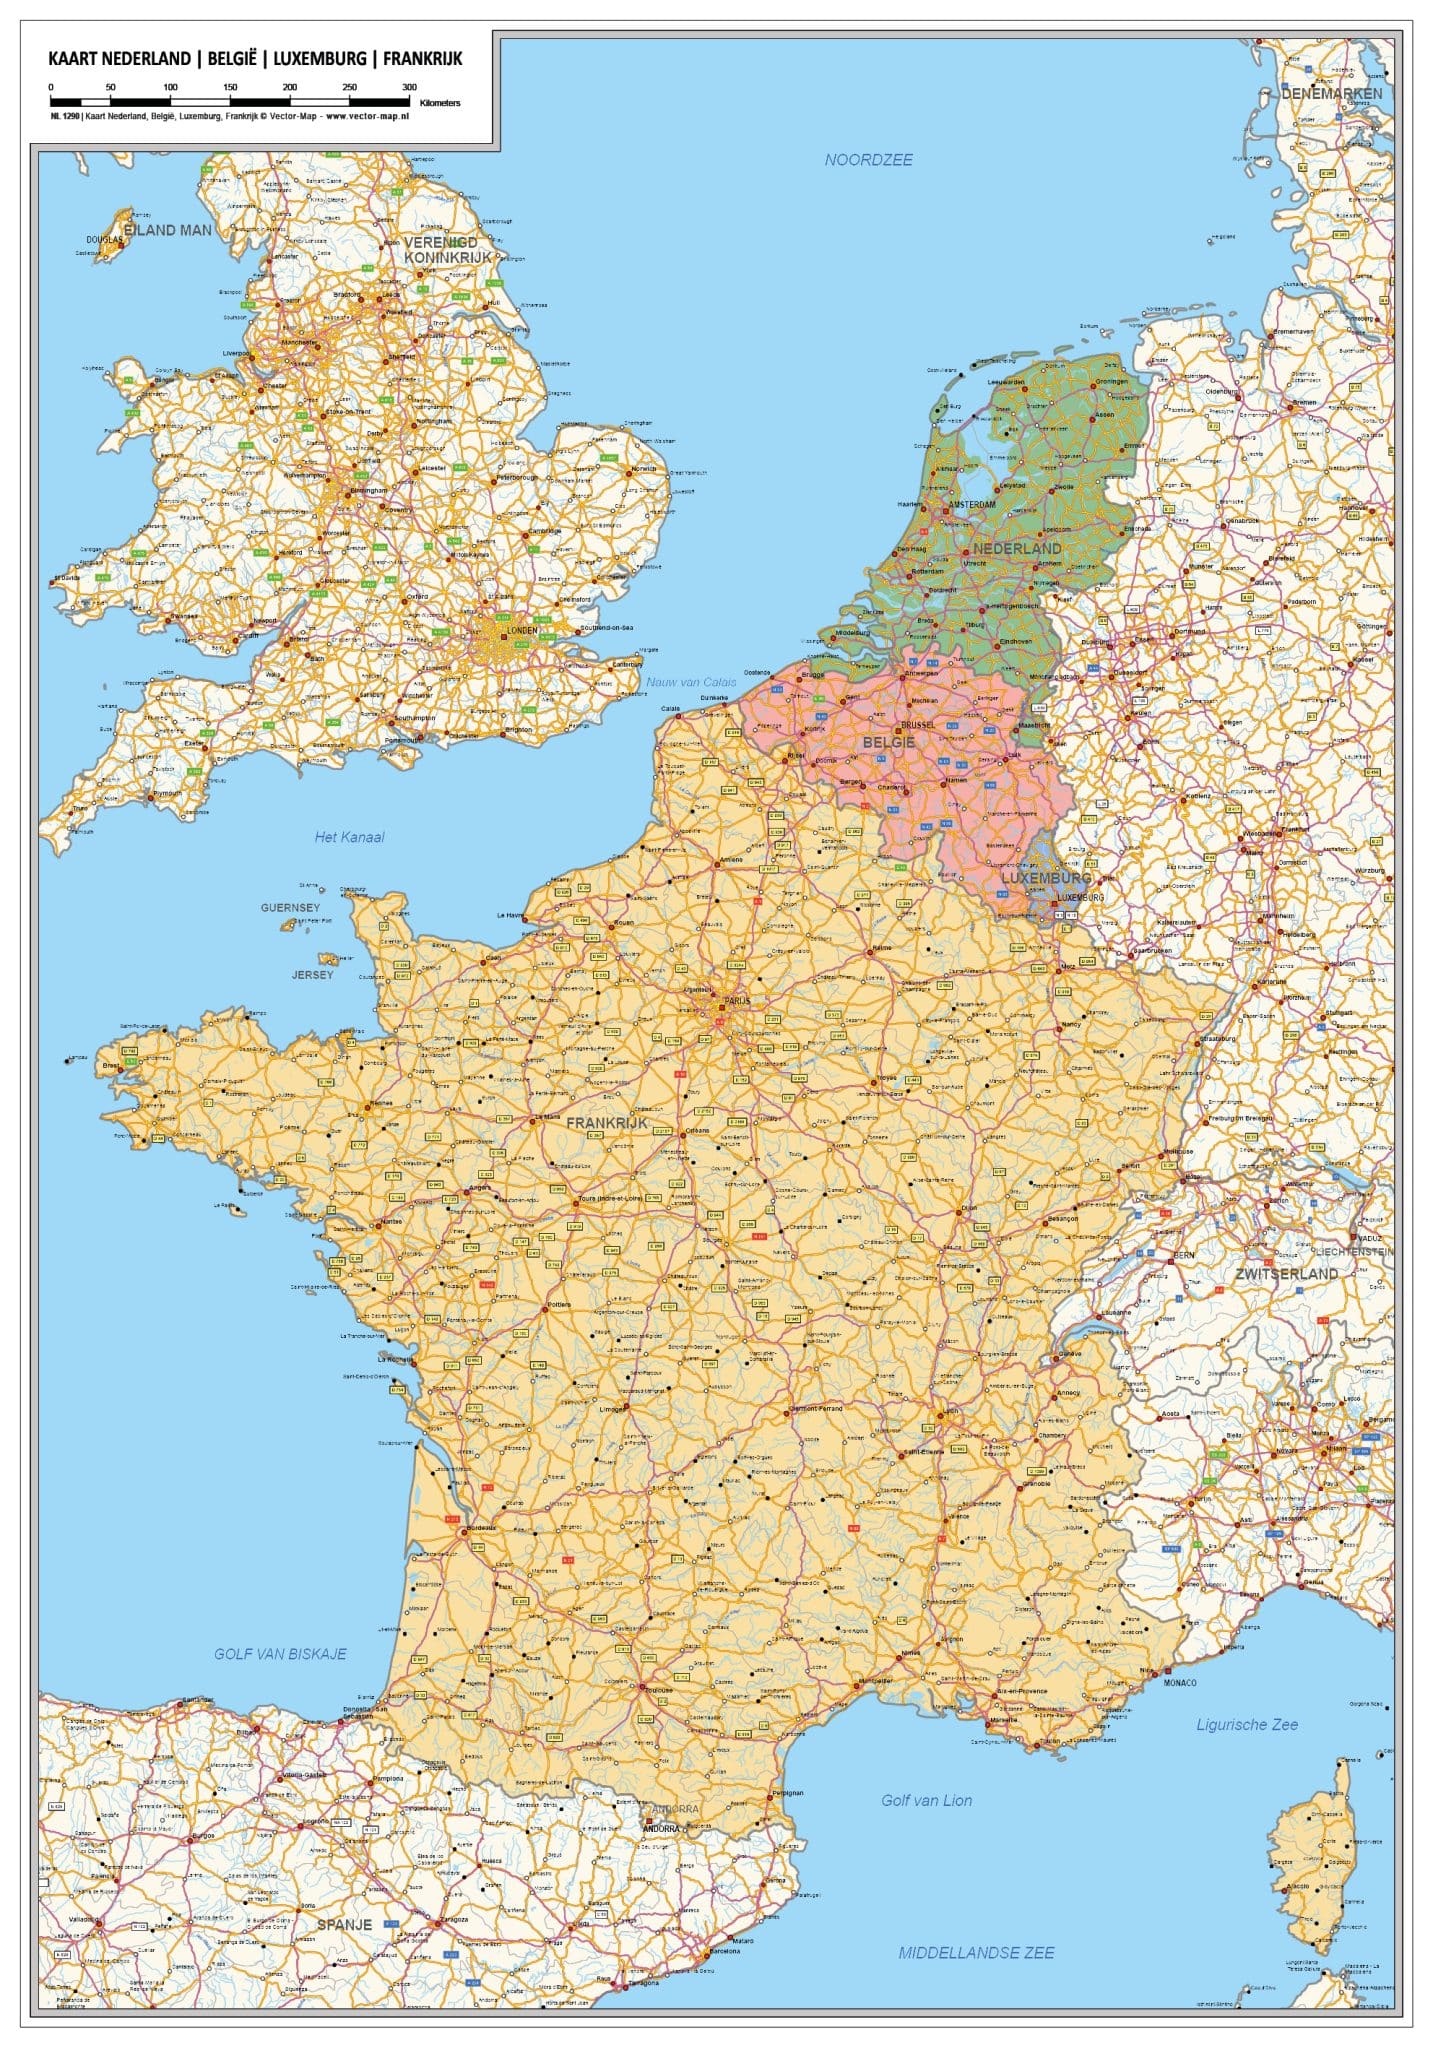 Kaart Nederland, Luxemburg, Frankrijk | Vector Map